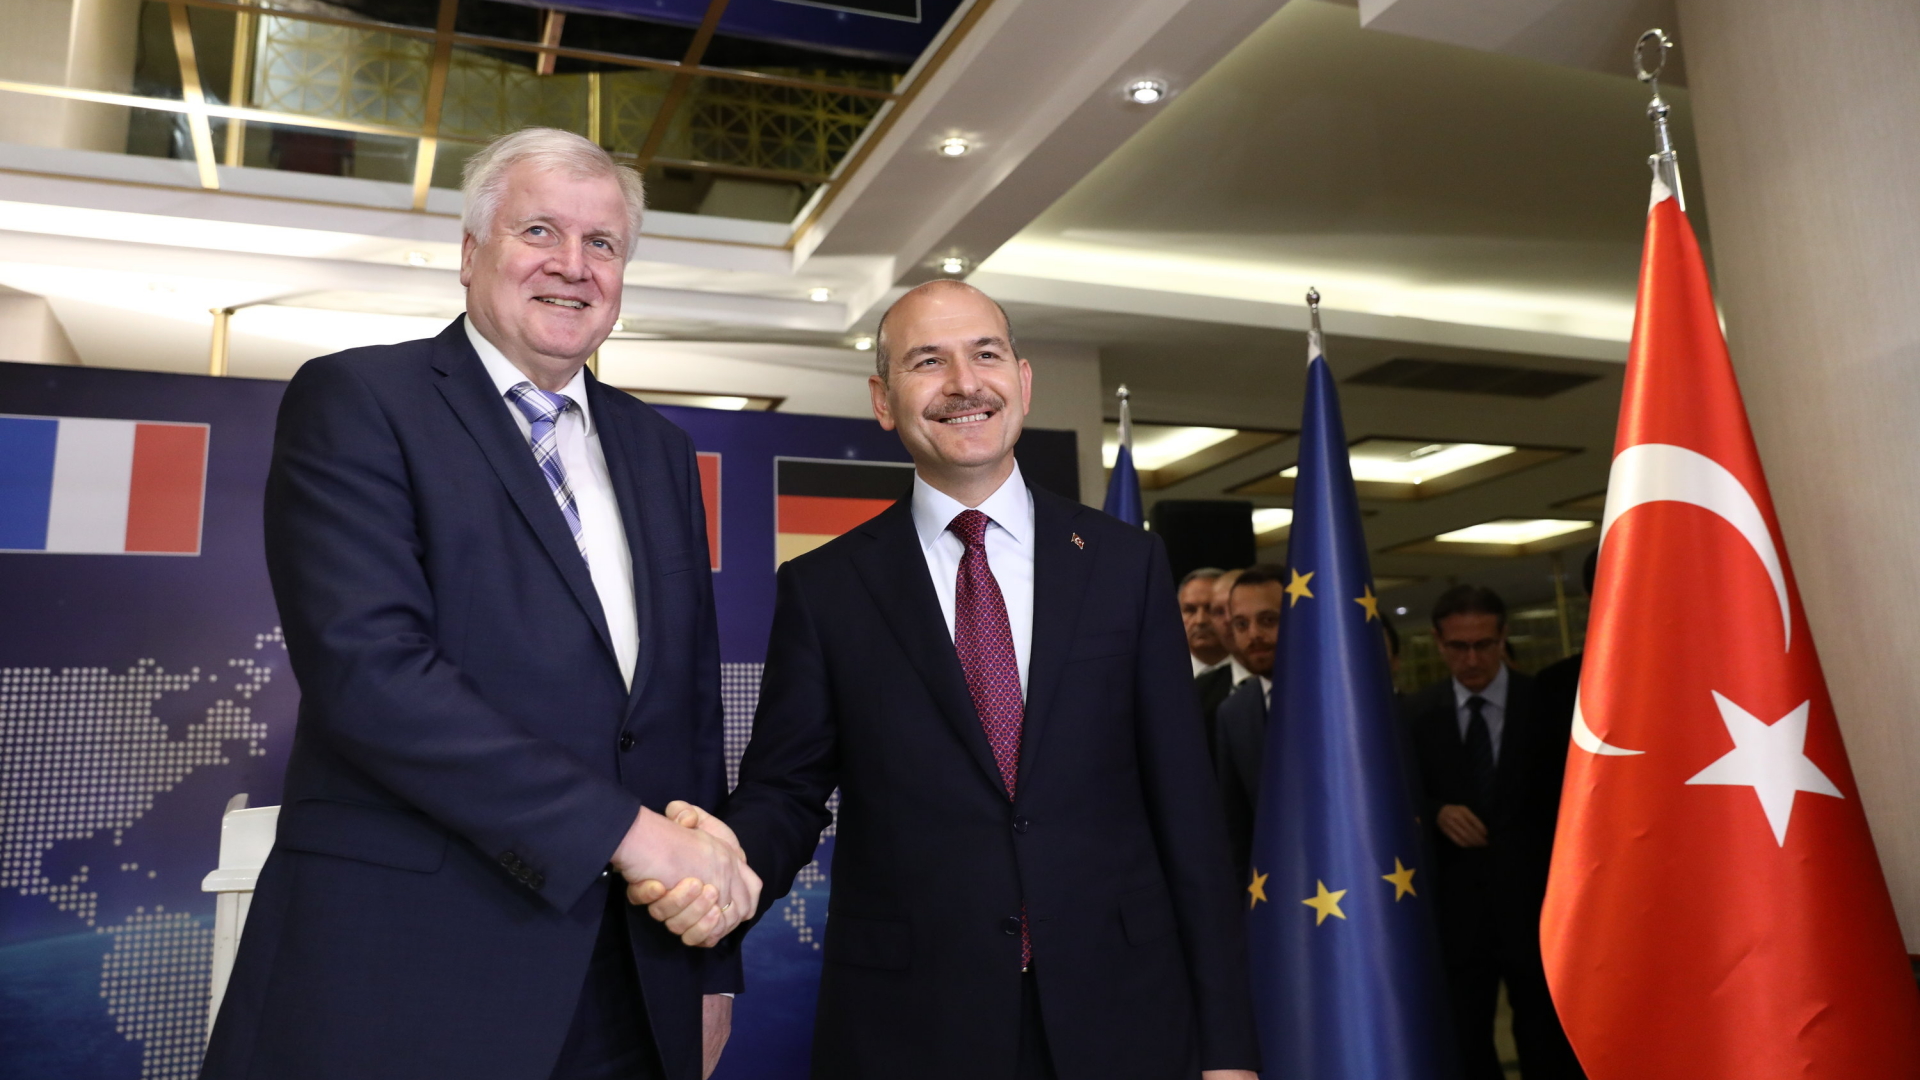 Suleyman Soylu (r), Innenminister der Türkei, und Horst Seehofer, Innenminister von Deutschland, geben sich nach einem Treffen im Rahmen der Gesprächen über den EU-Flüchtlingspakt mit der Türkei die Hand.  | dpa